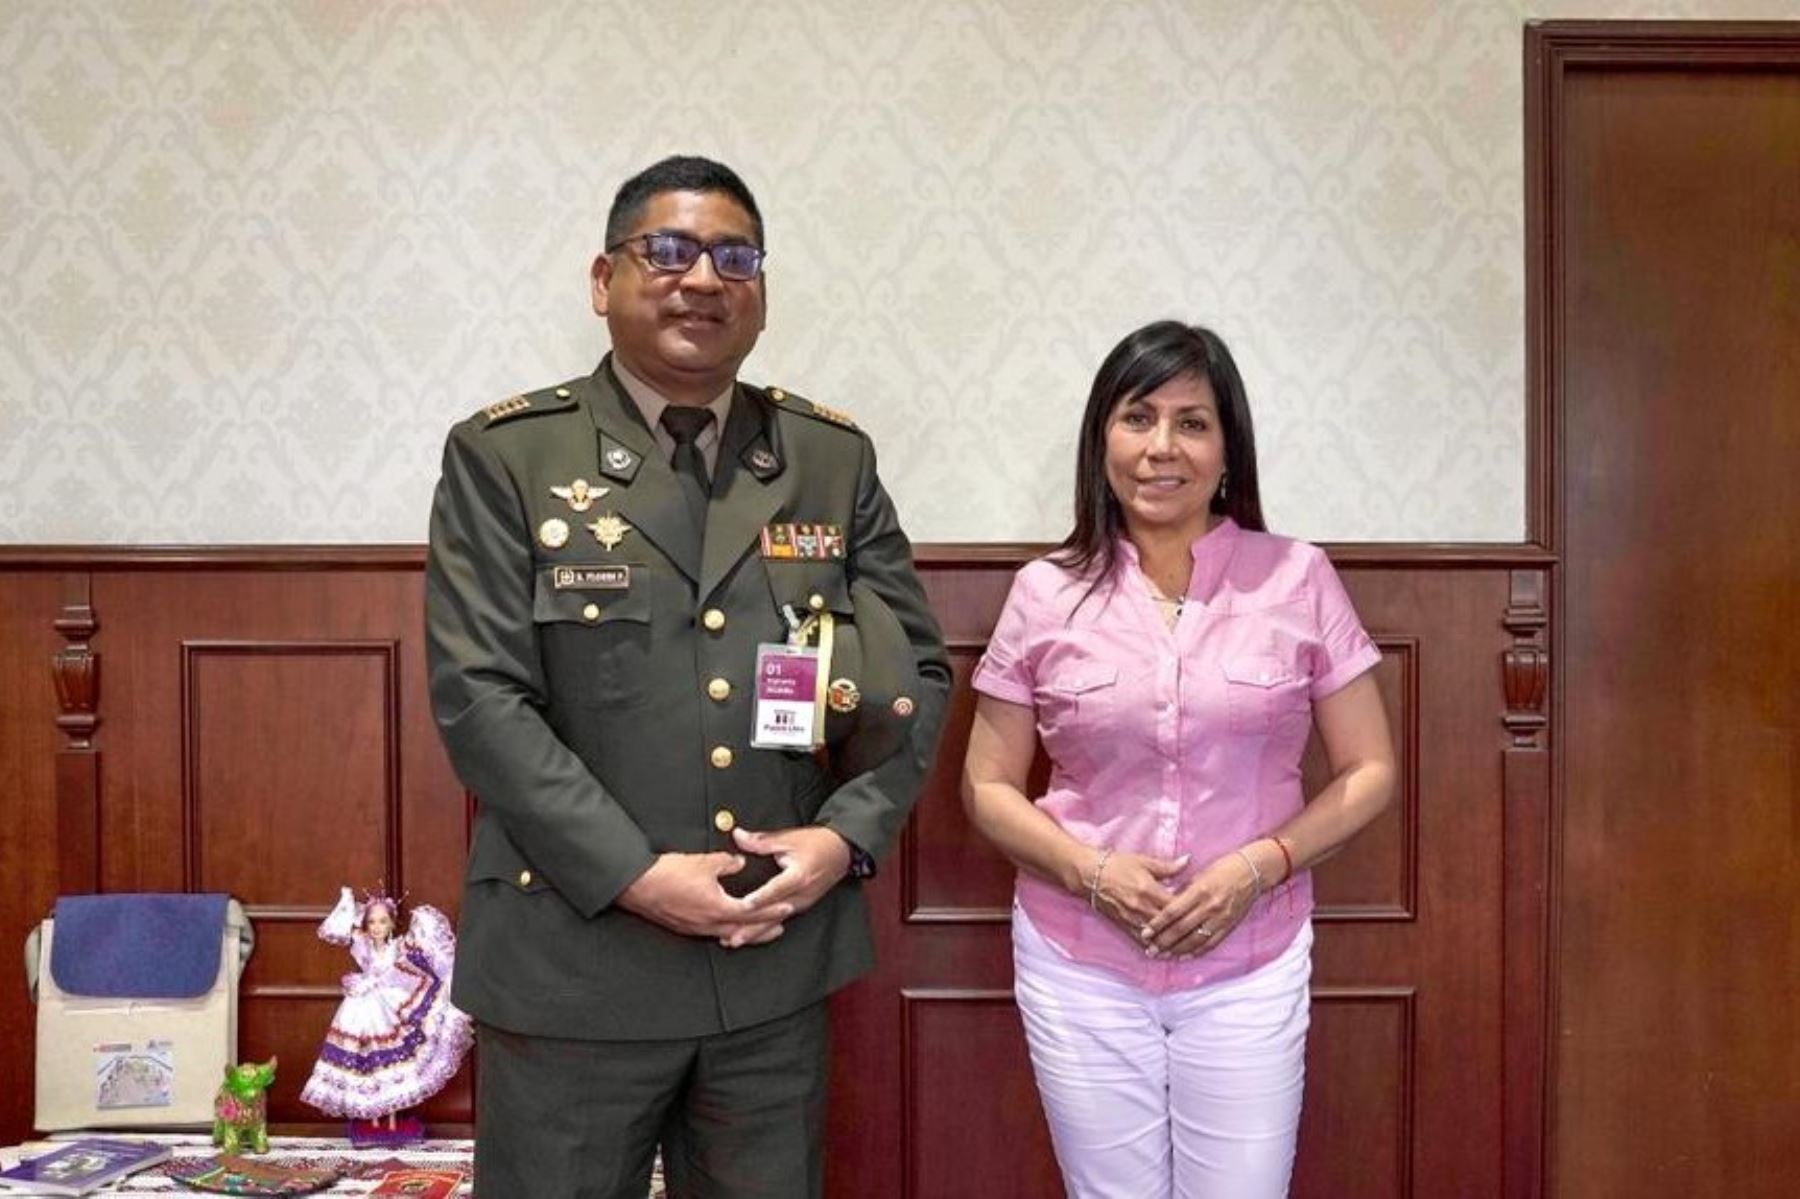 A fin de reforzar la seguridad ciudadana de Pueblo Libre, la alcaldesa Mónica Tello López se reunió con el comandante del Ejército Peruano Erick Flores, jefe del Batallón de Intendencia N° 511, Cuartel Bolívar.